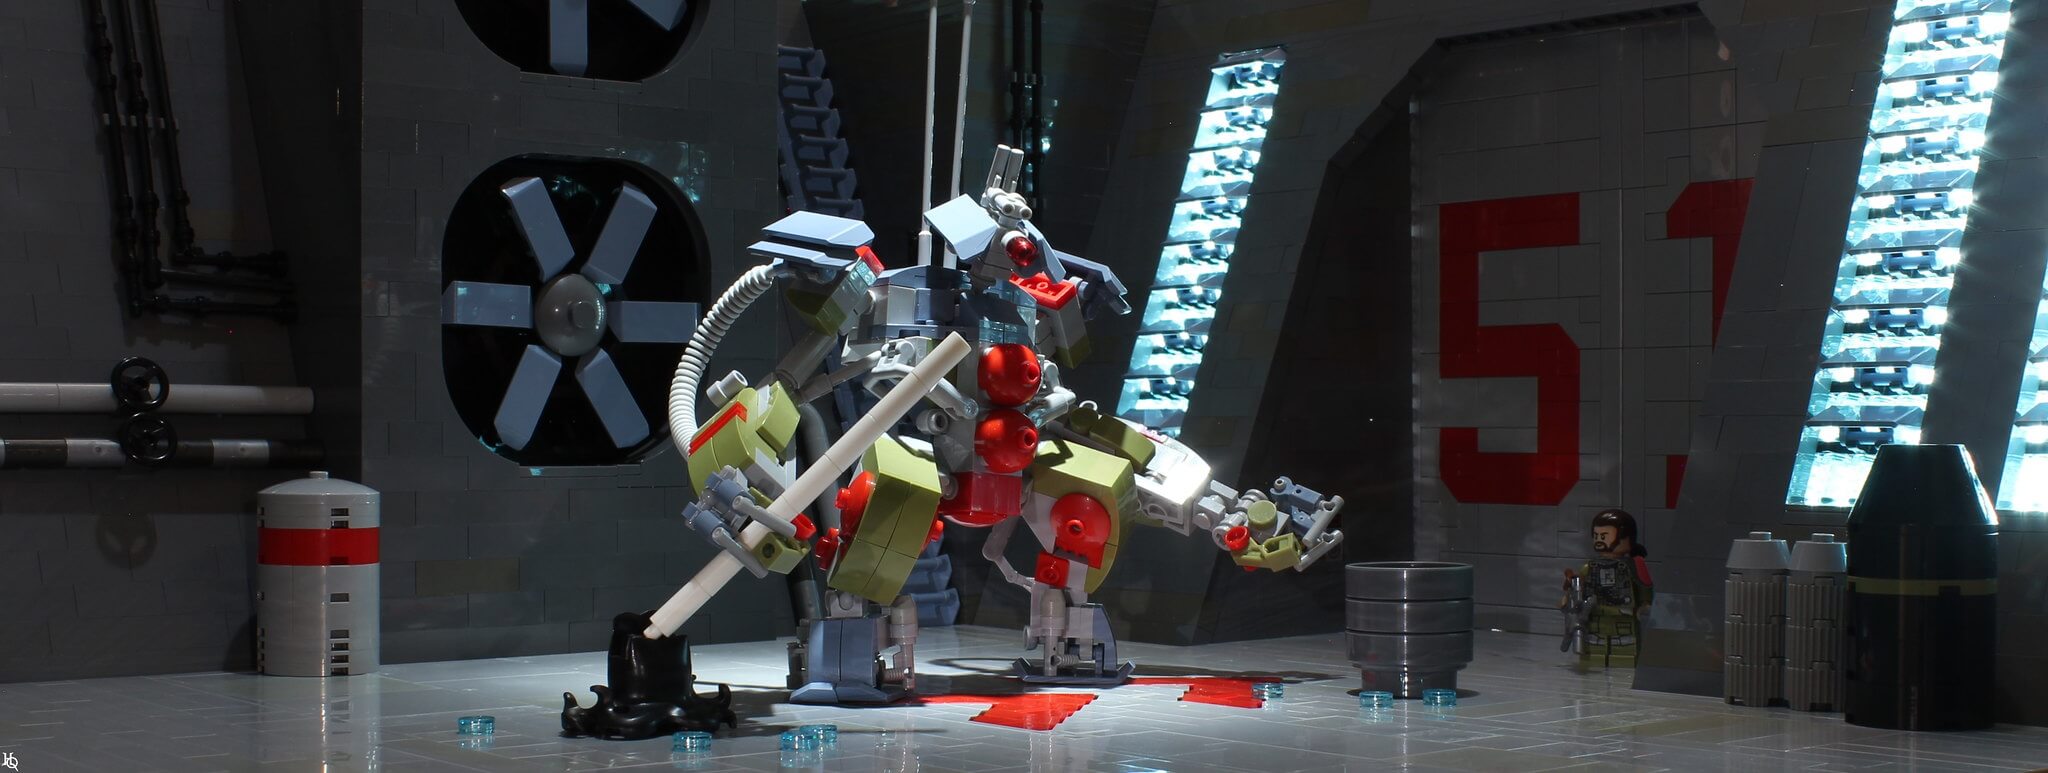 Roboter machen das Leben arm – Lego-Motiv